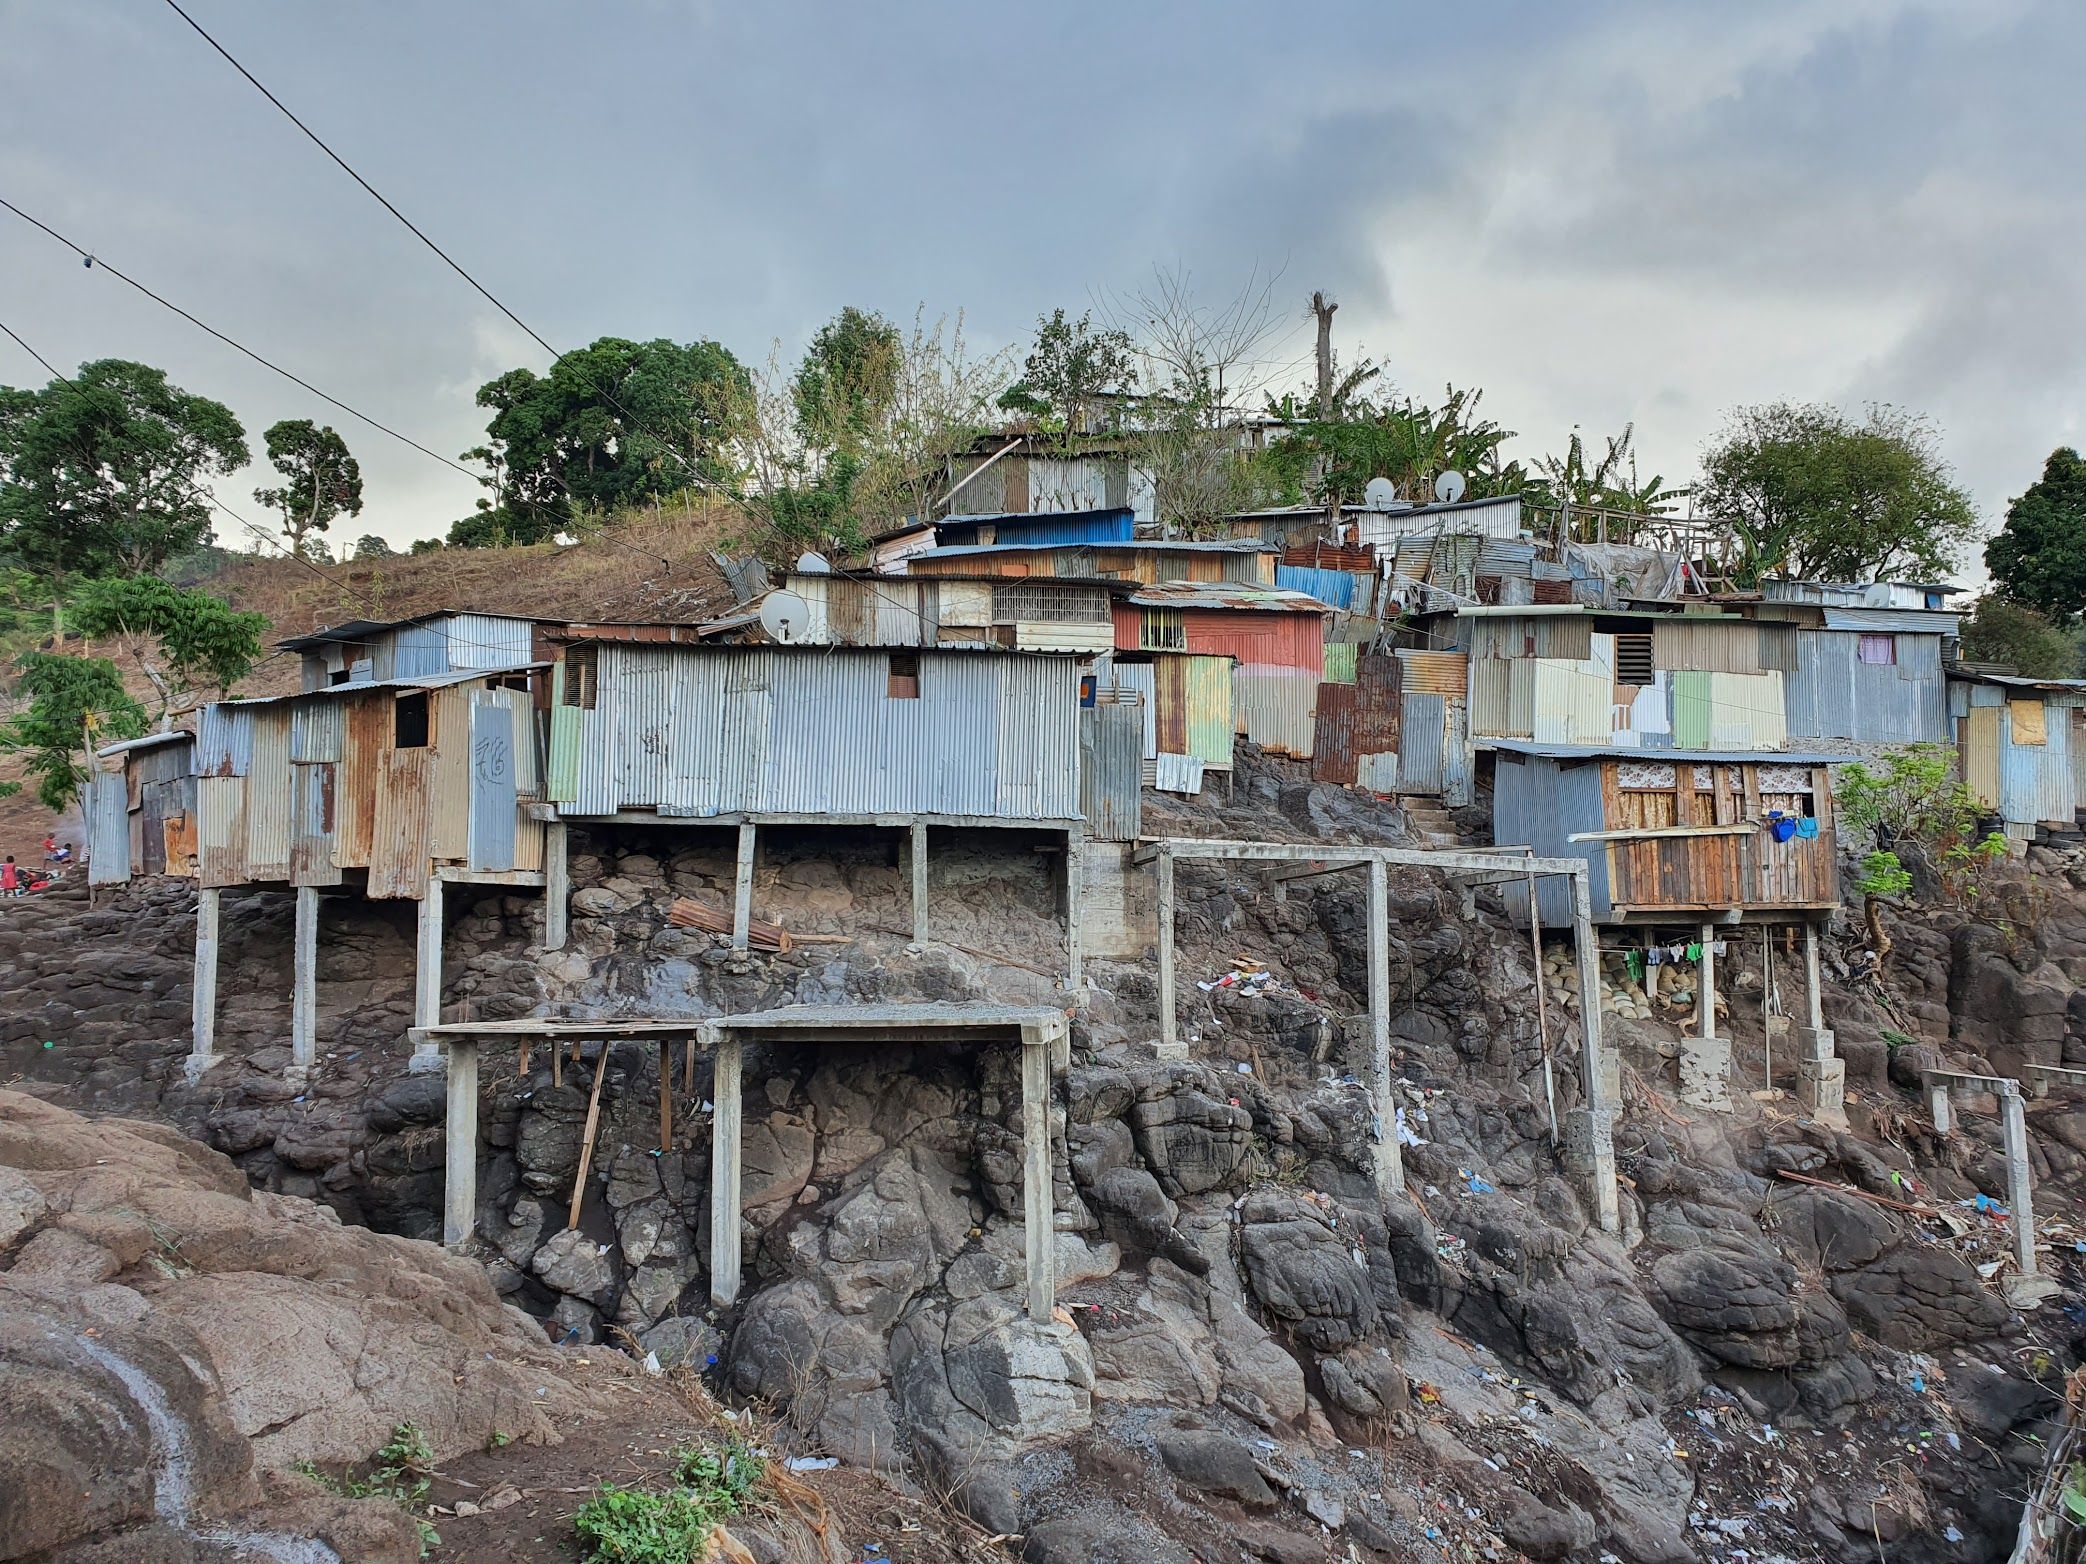 La crise à Mayotte - La Vie des idées